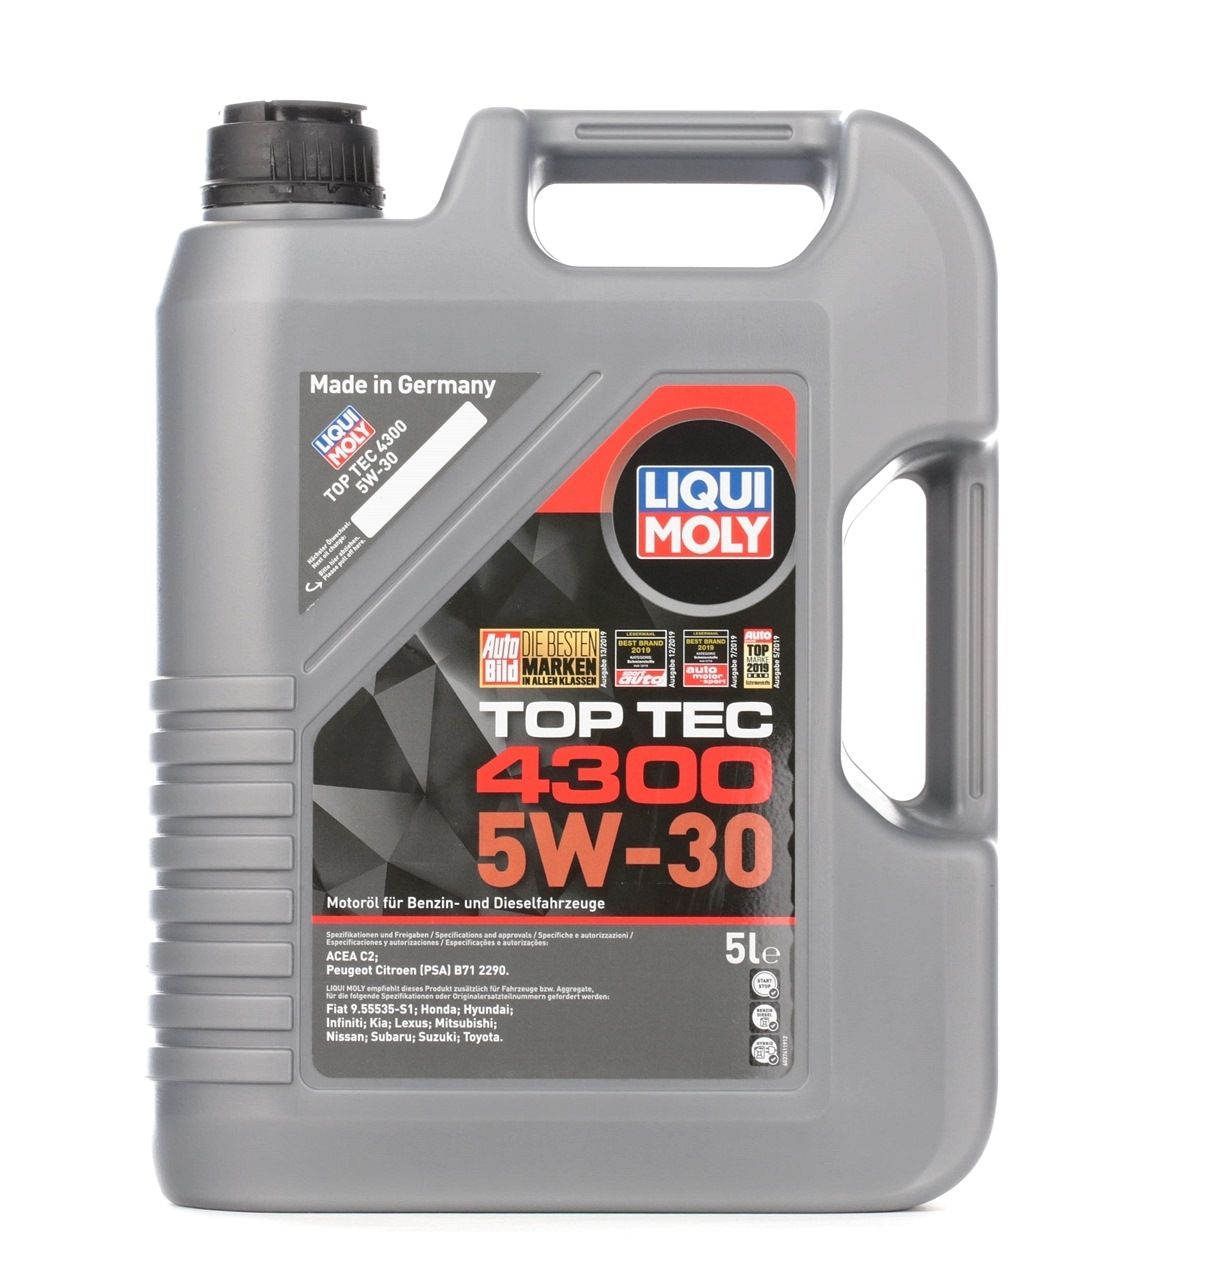 LIQUI MOLY Top Tec, 4300 5W-30, 5l, Synthetic Oil Motor oil 3741 buy